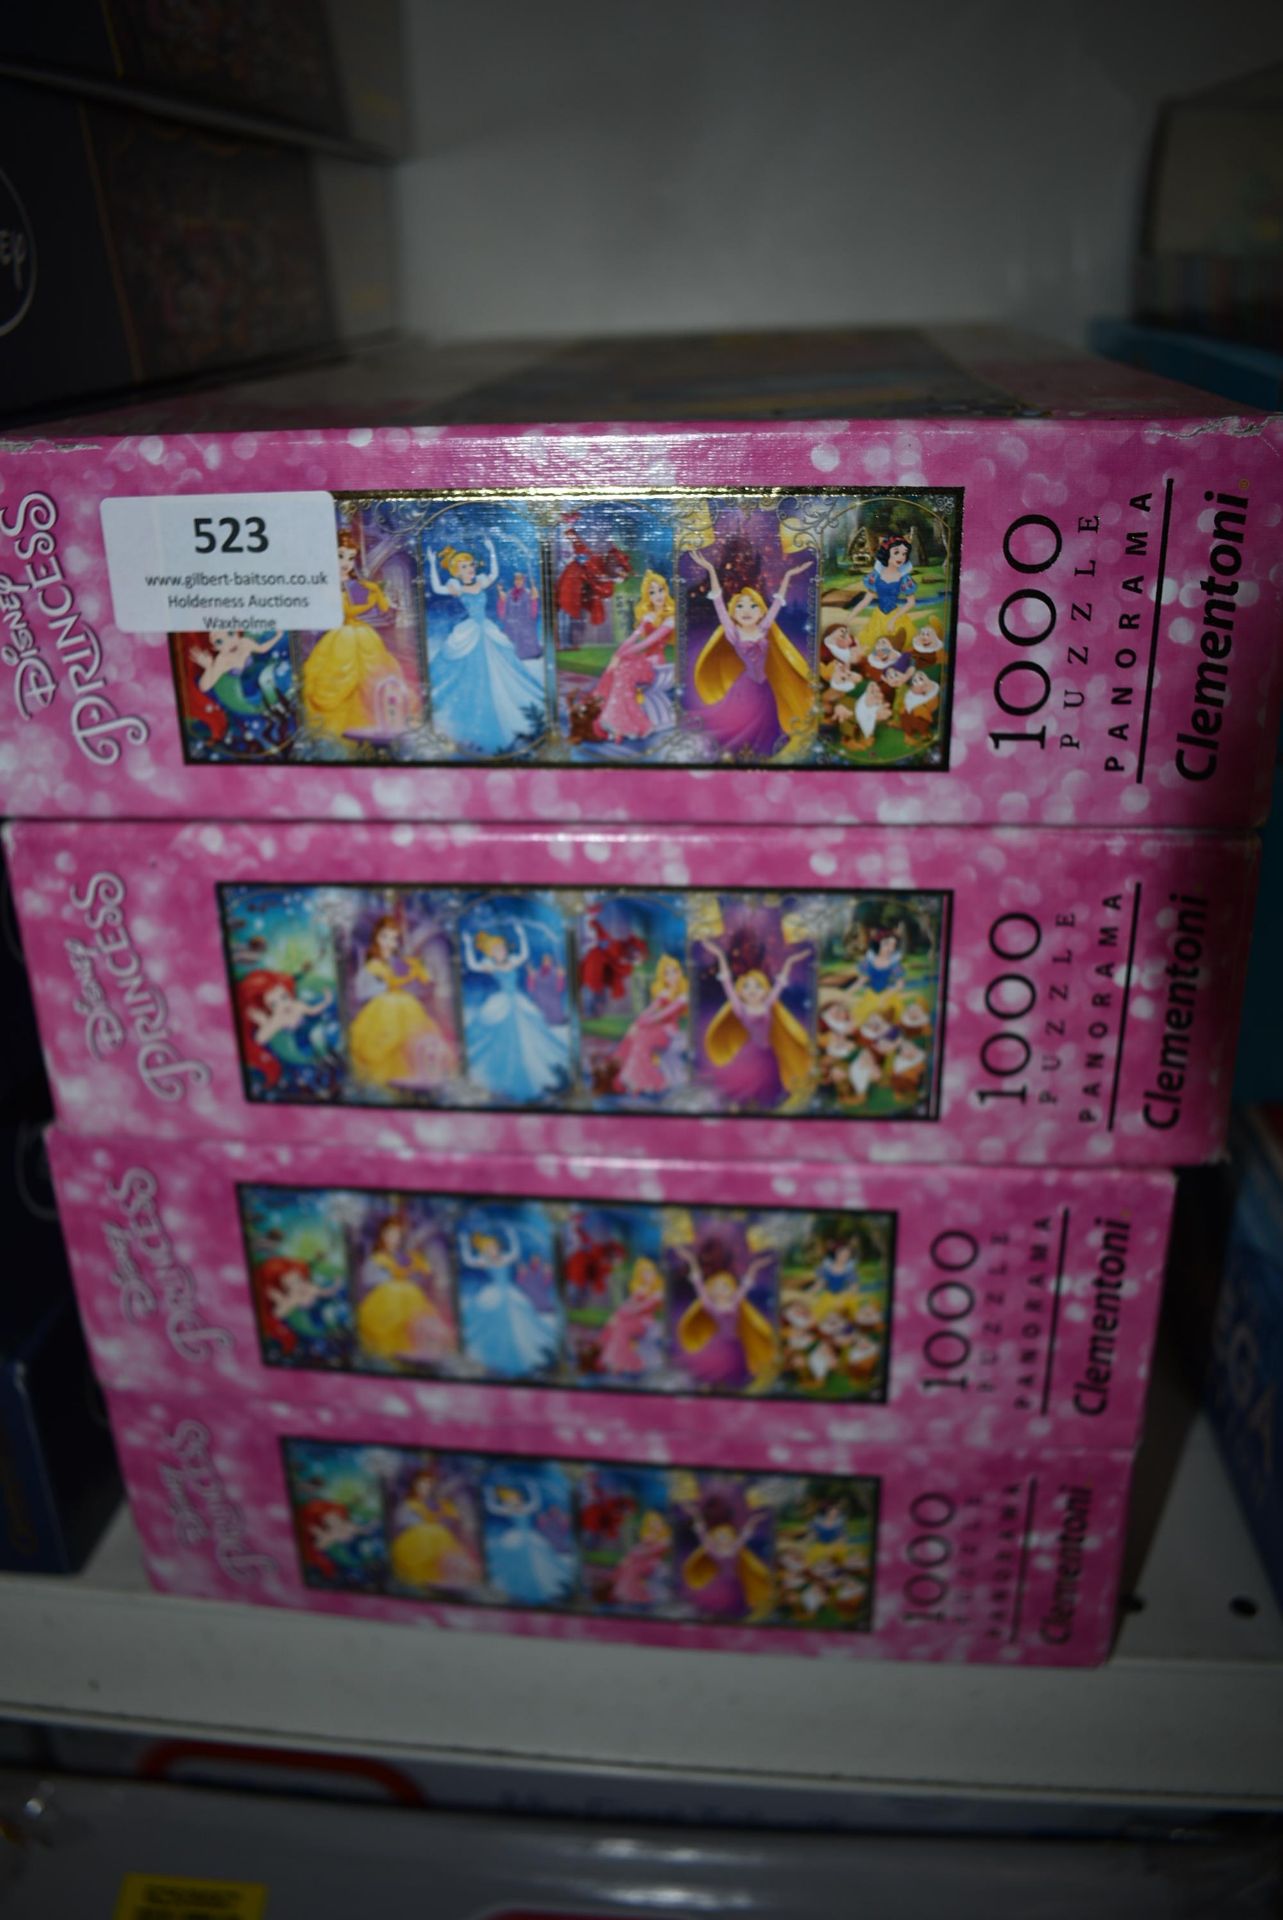 Four Disney Princess Panorama 1000pc Jigsaw Puzzles - Image 4 of 4